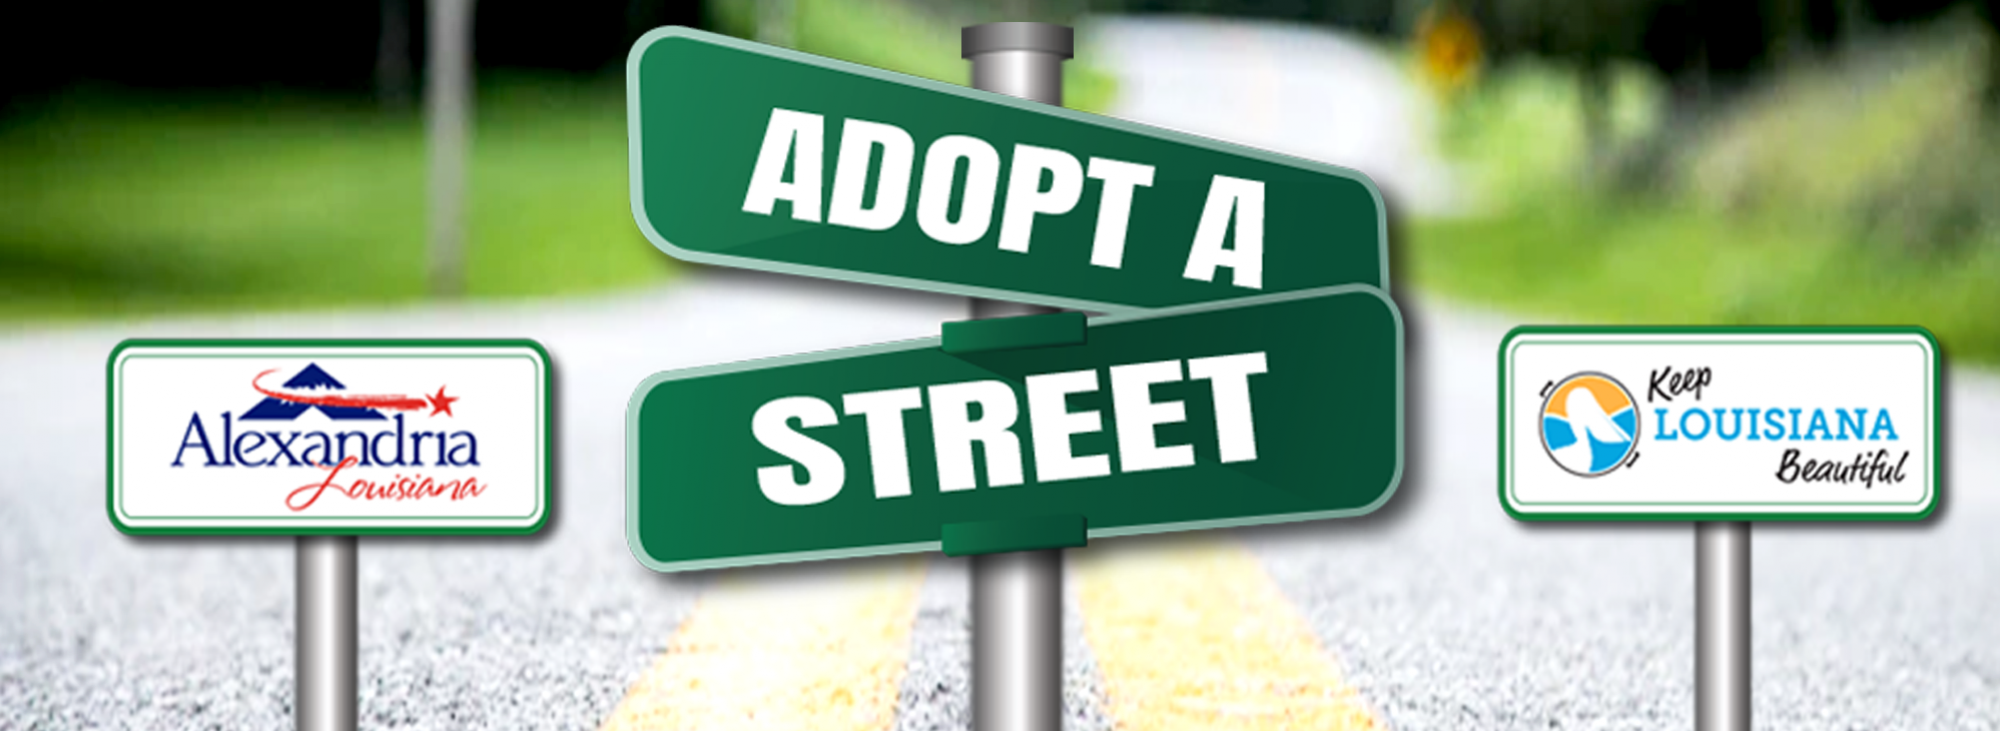 Adopt-A-Street